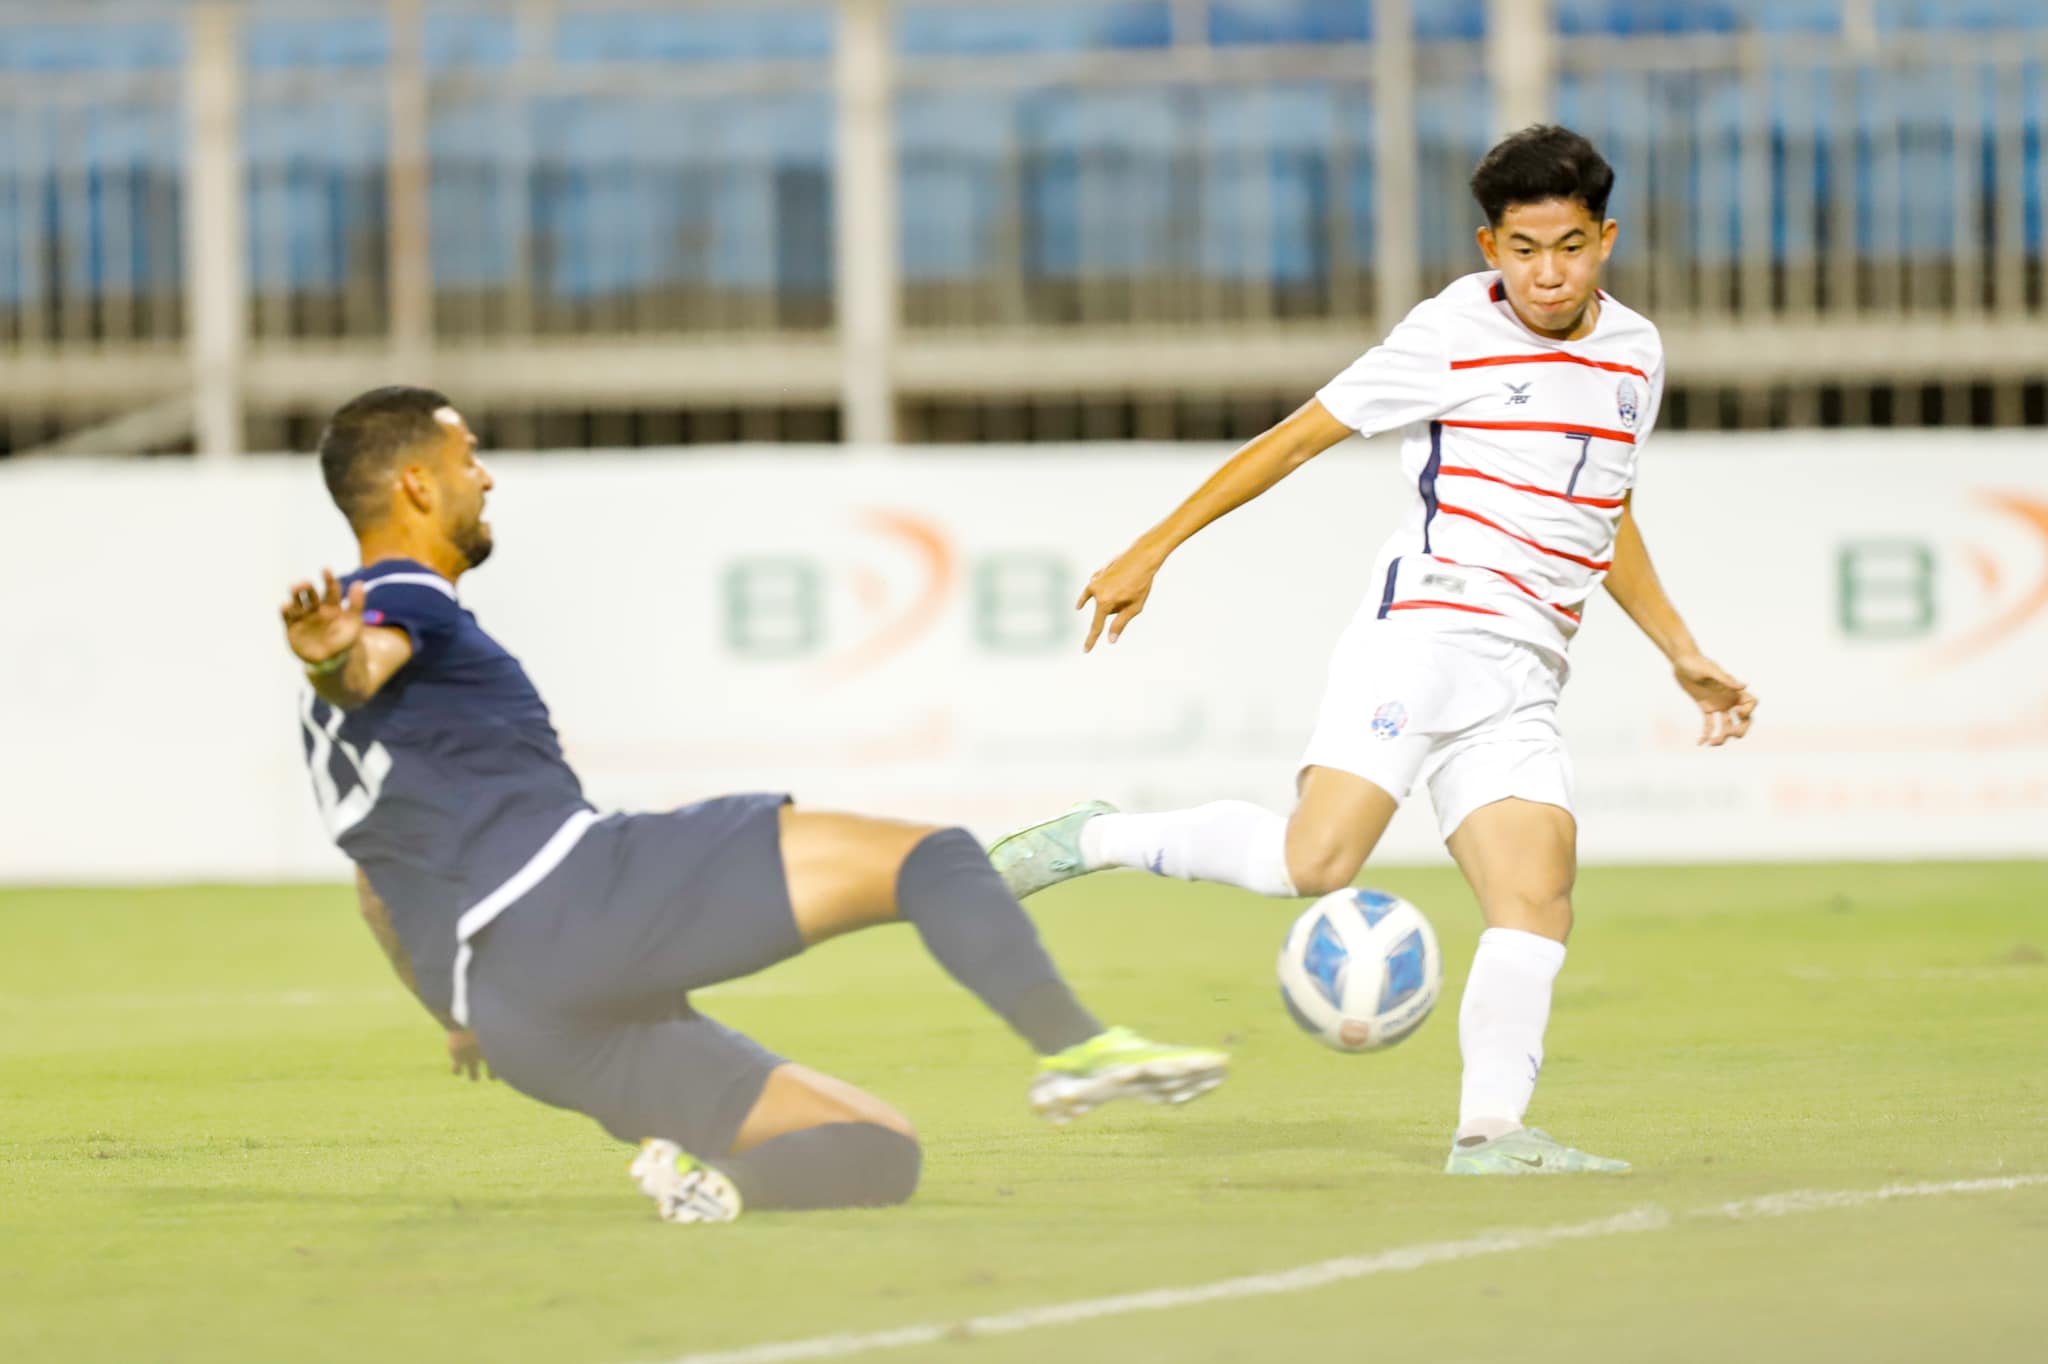 Campuchia mất tiền vệ trụ cột ngay trước giải U23 Đông Nam Á - Ảnh 2